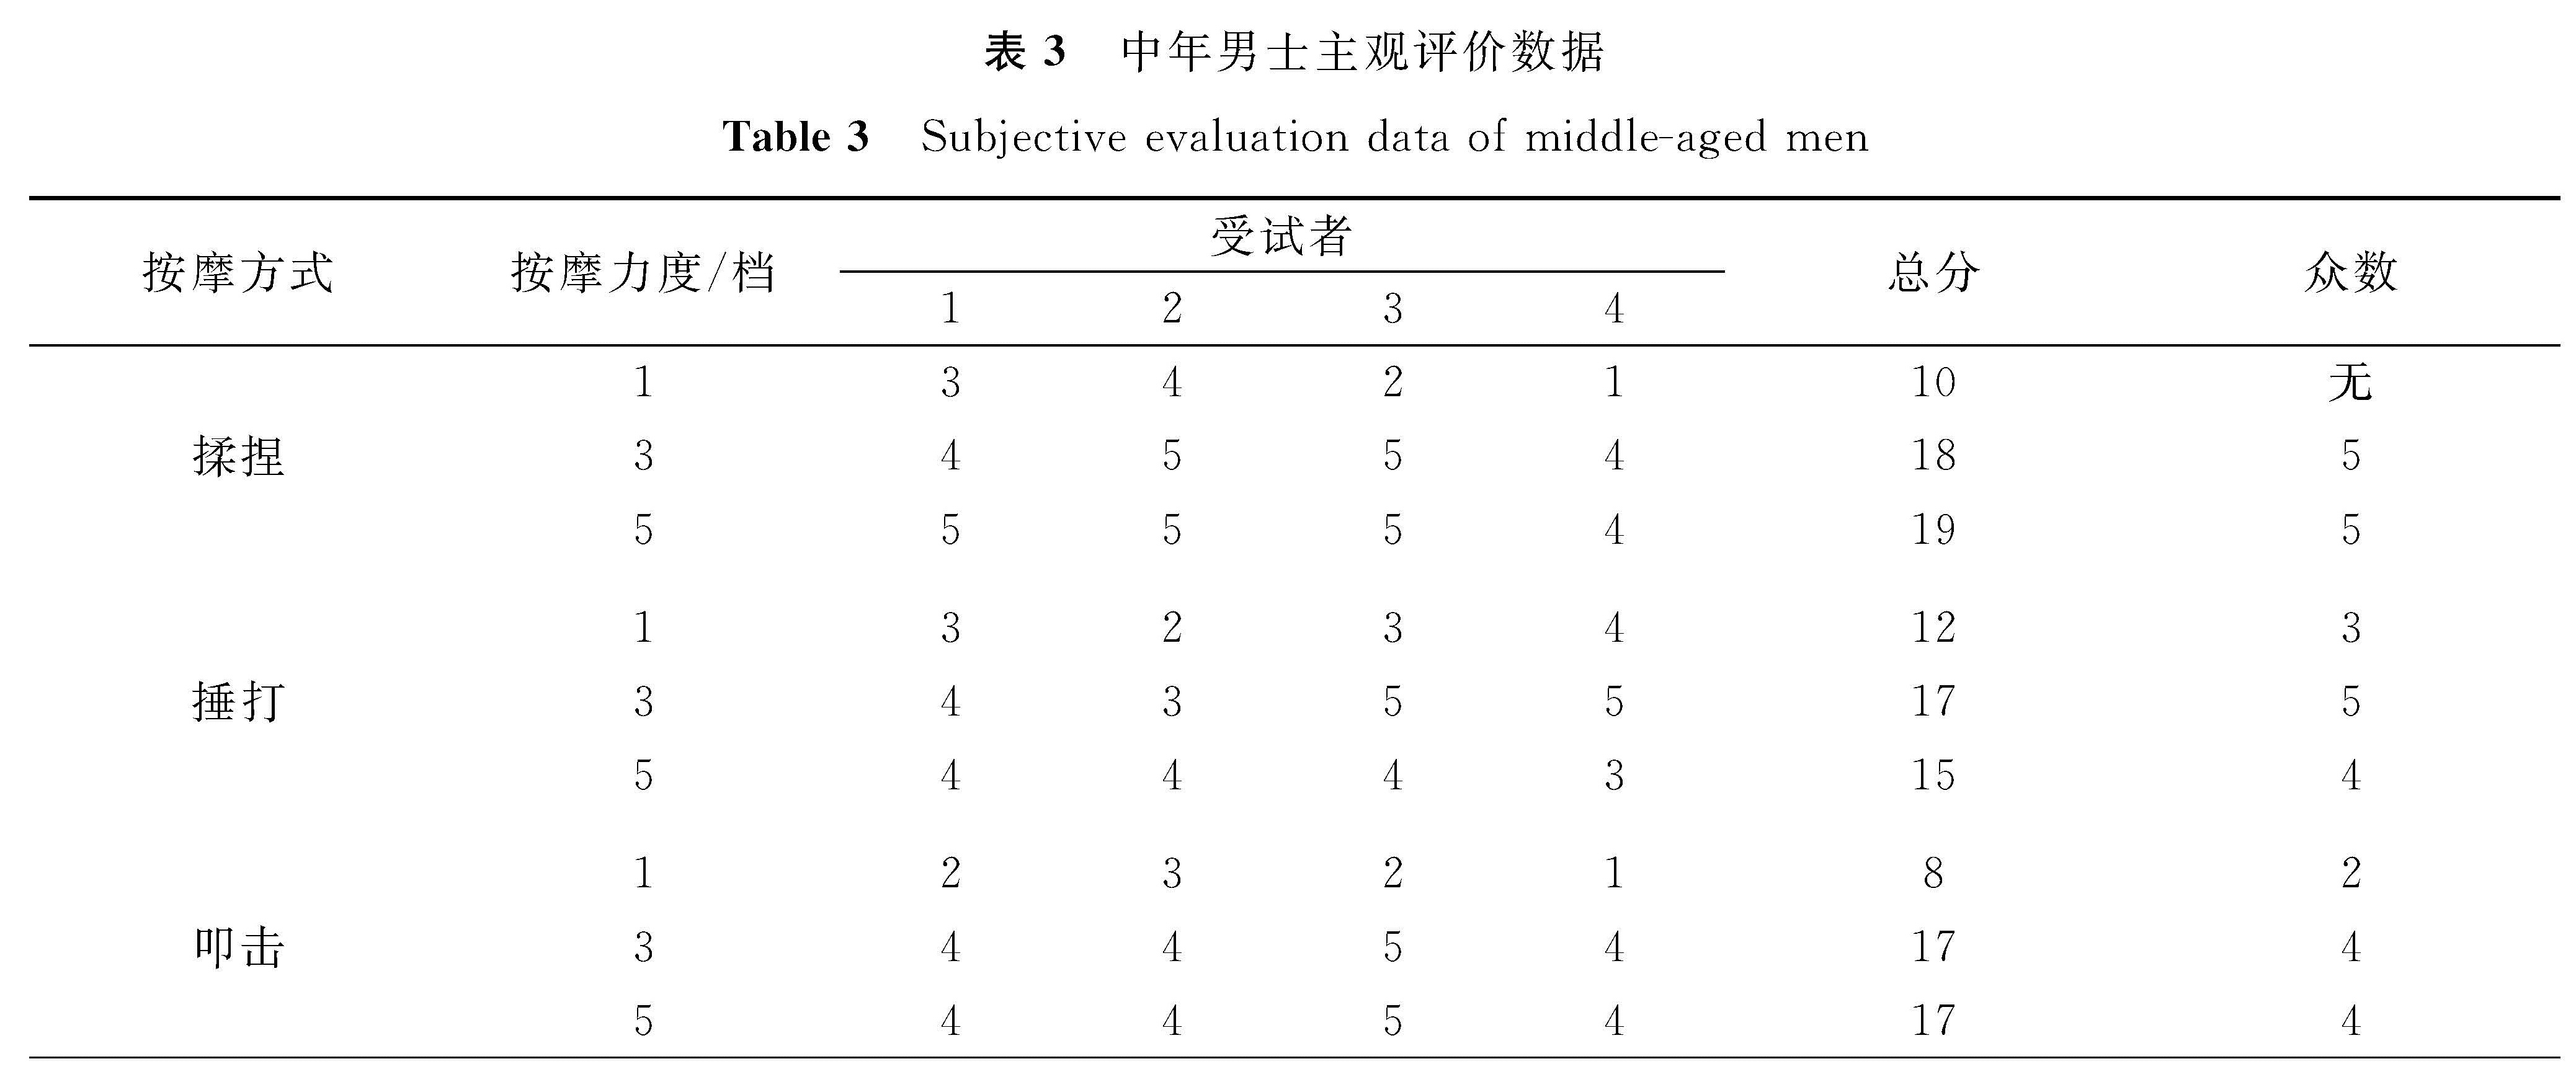 表3 中年男士主观评价数据<br/>Table 3 Subjective evaluation data of middle-aged men